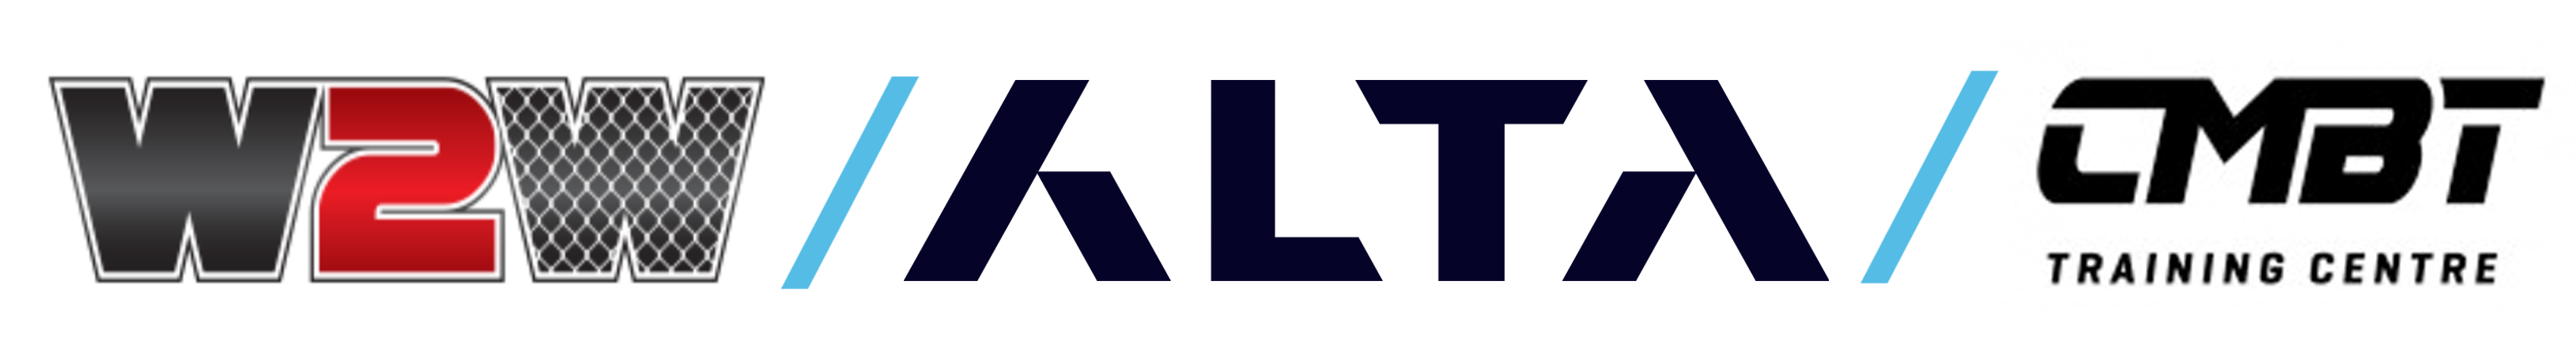 W2w Alta CMBT logo